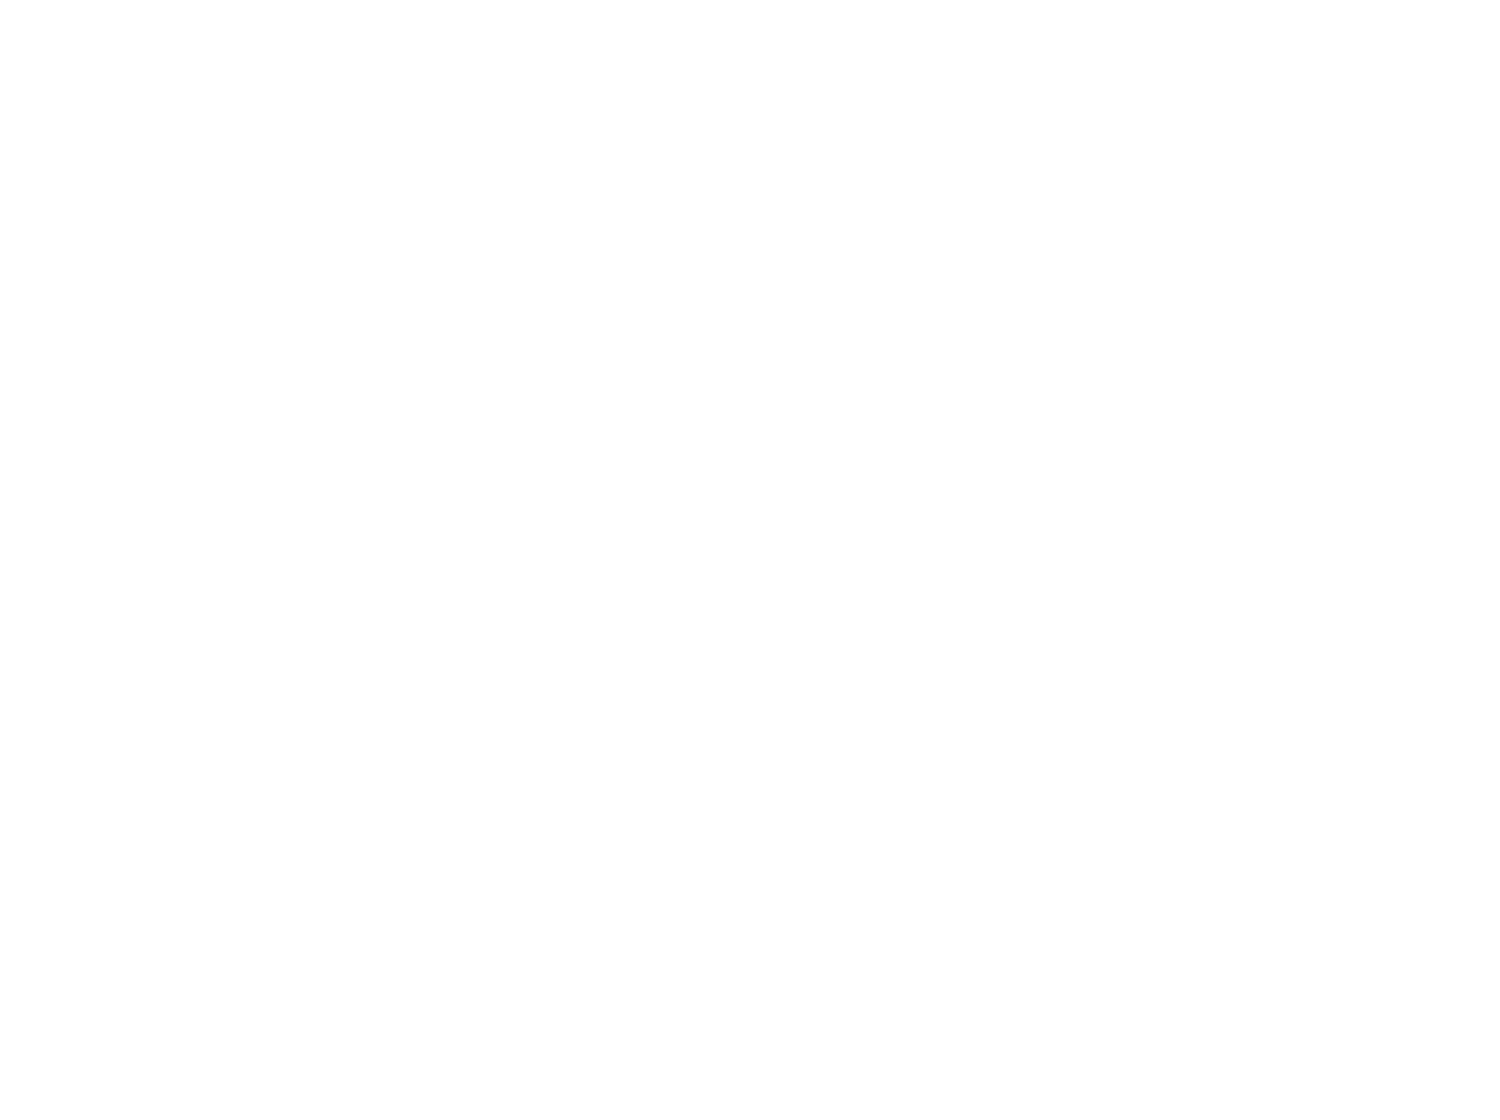 Waynesville Pizza Company